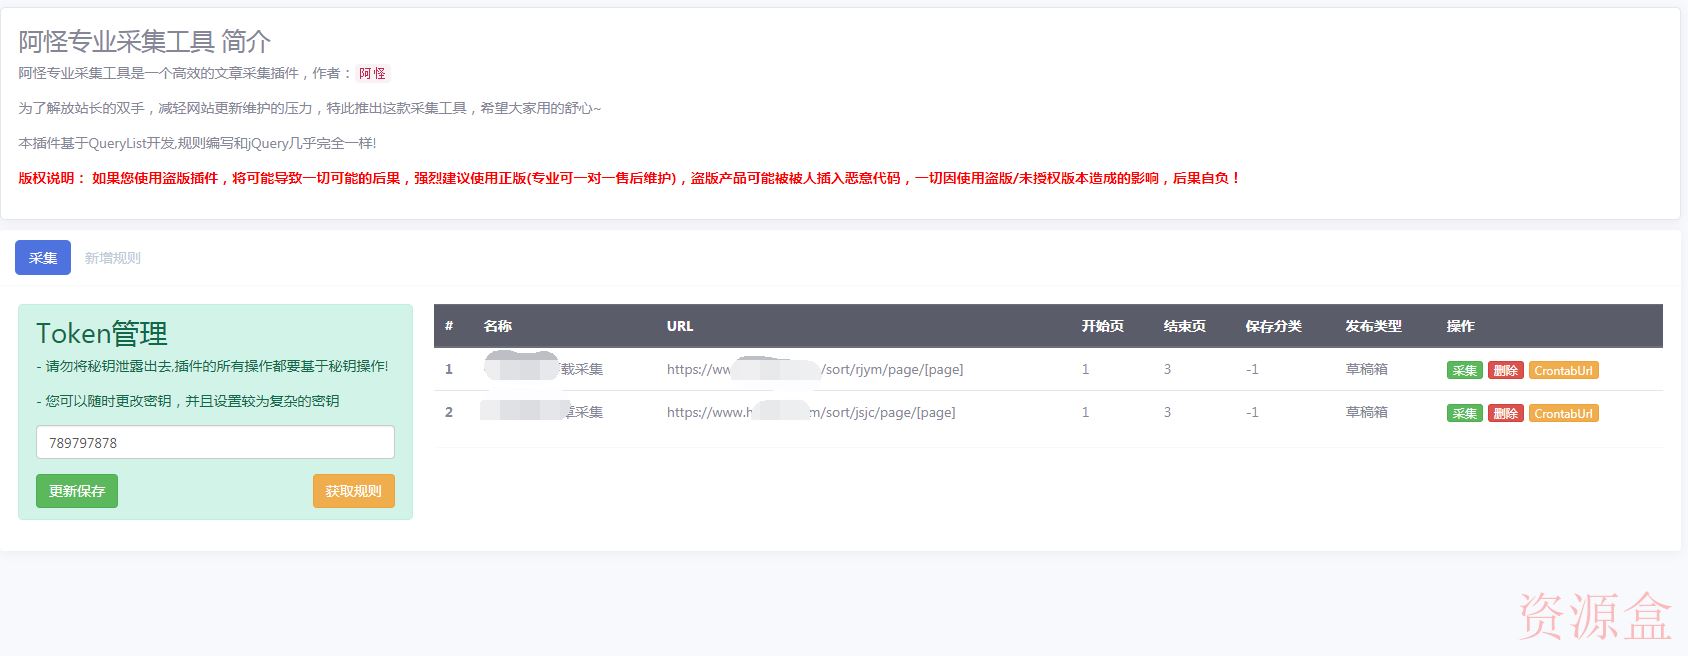 Emlog专业采集工具支持定时任务,支持自定义规则-资源盒-www.ziyuanhe.cn-第8张图片